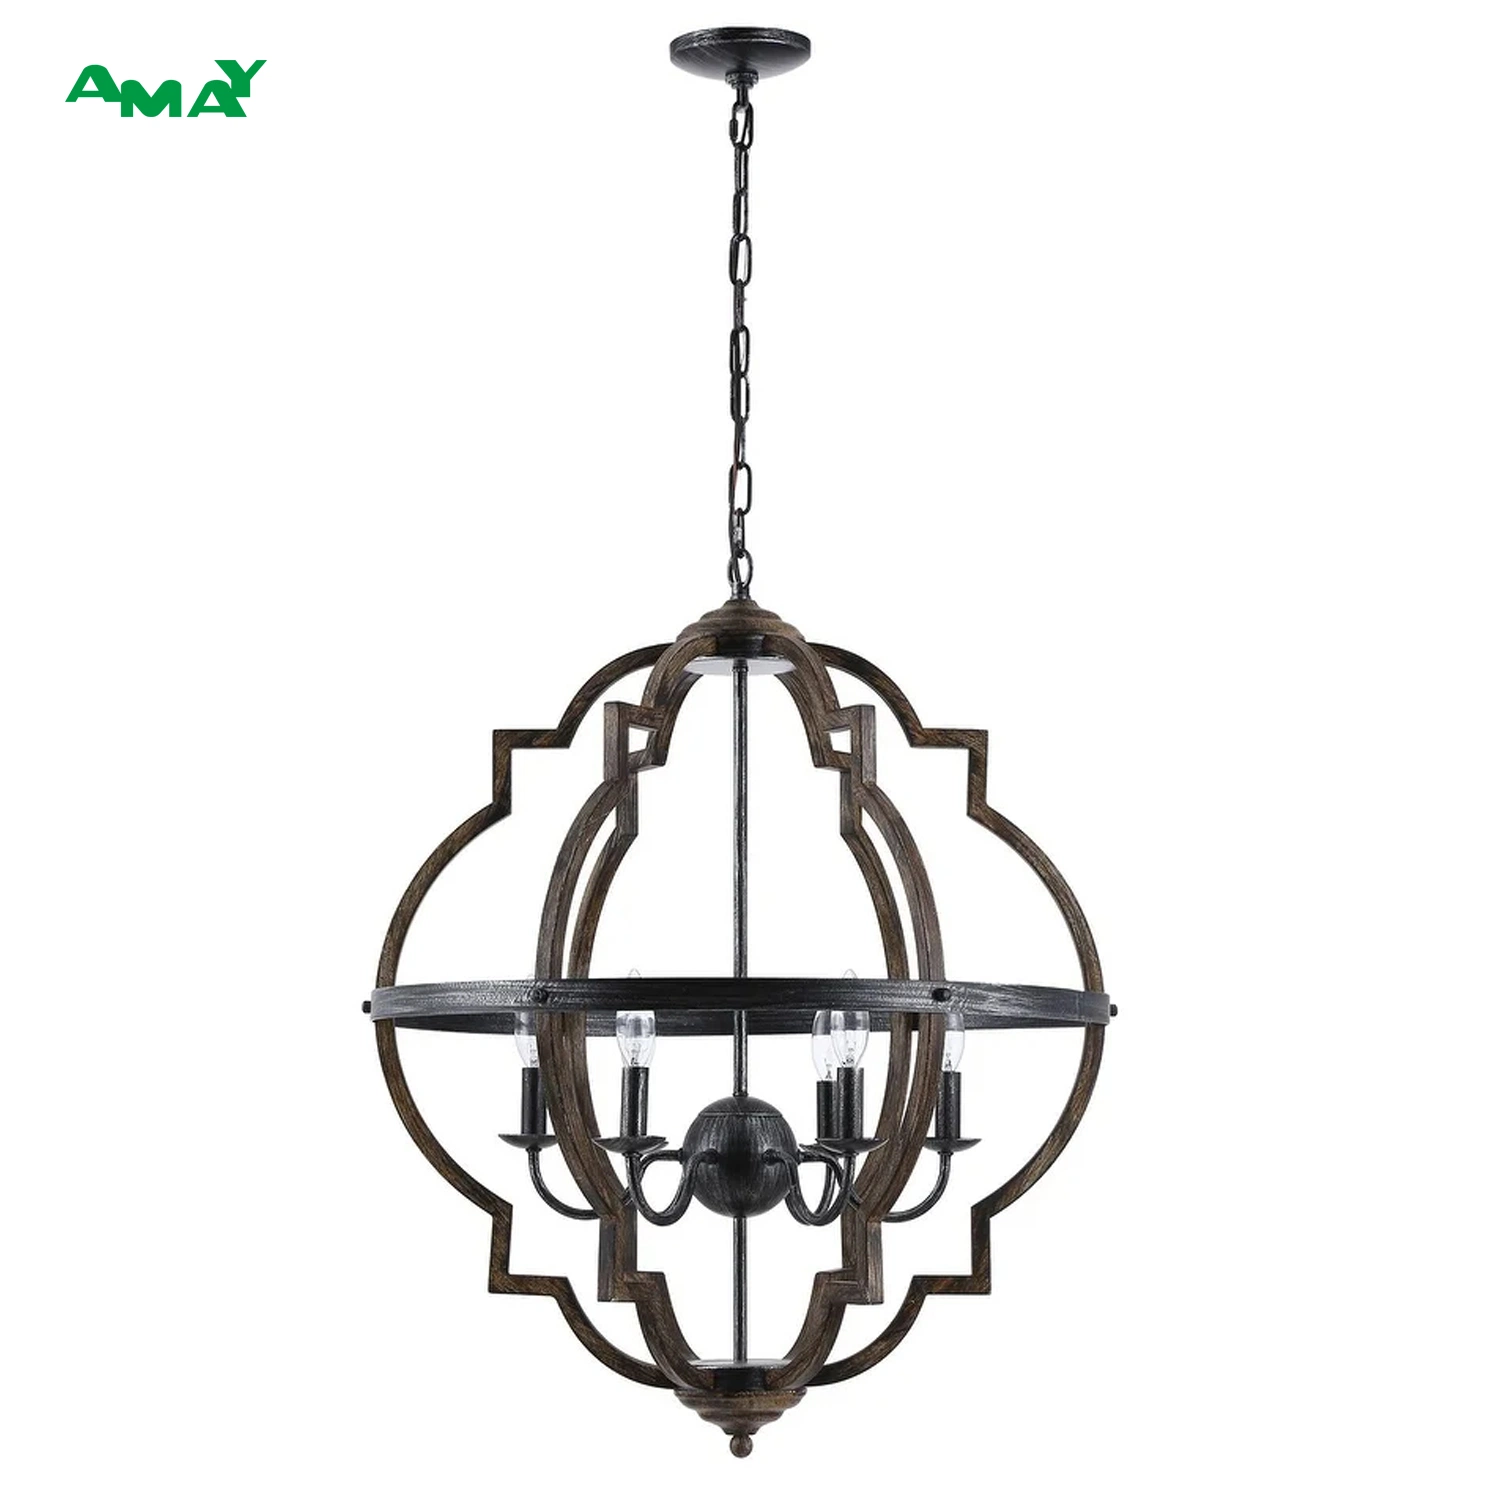 25" Промышленный фонарь древесное зерно 6-легкий подвесной светильник Chandelier